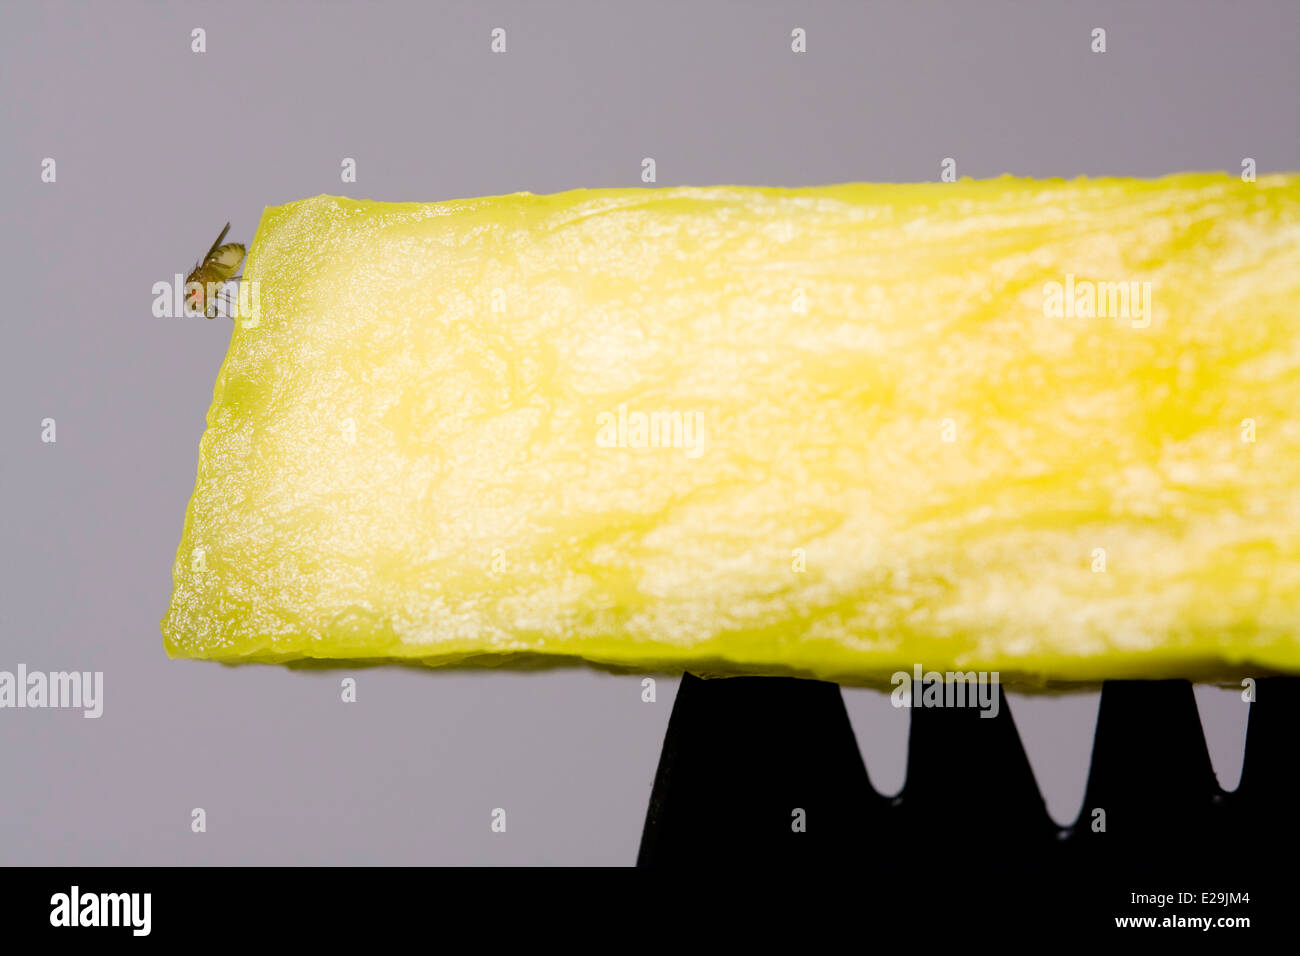 La mouche des fruits communs ou du vinaigre (Drosophila melanogaster) assis sur un morceau d'ananas jaune au sommet d'une Spork en plastique noir Banque D'Images